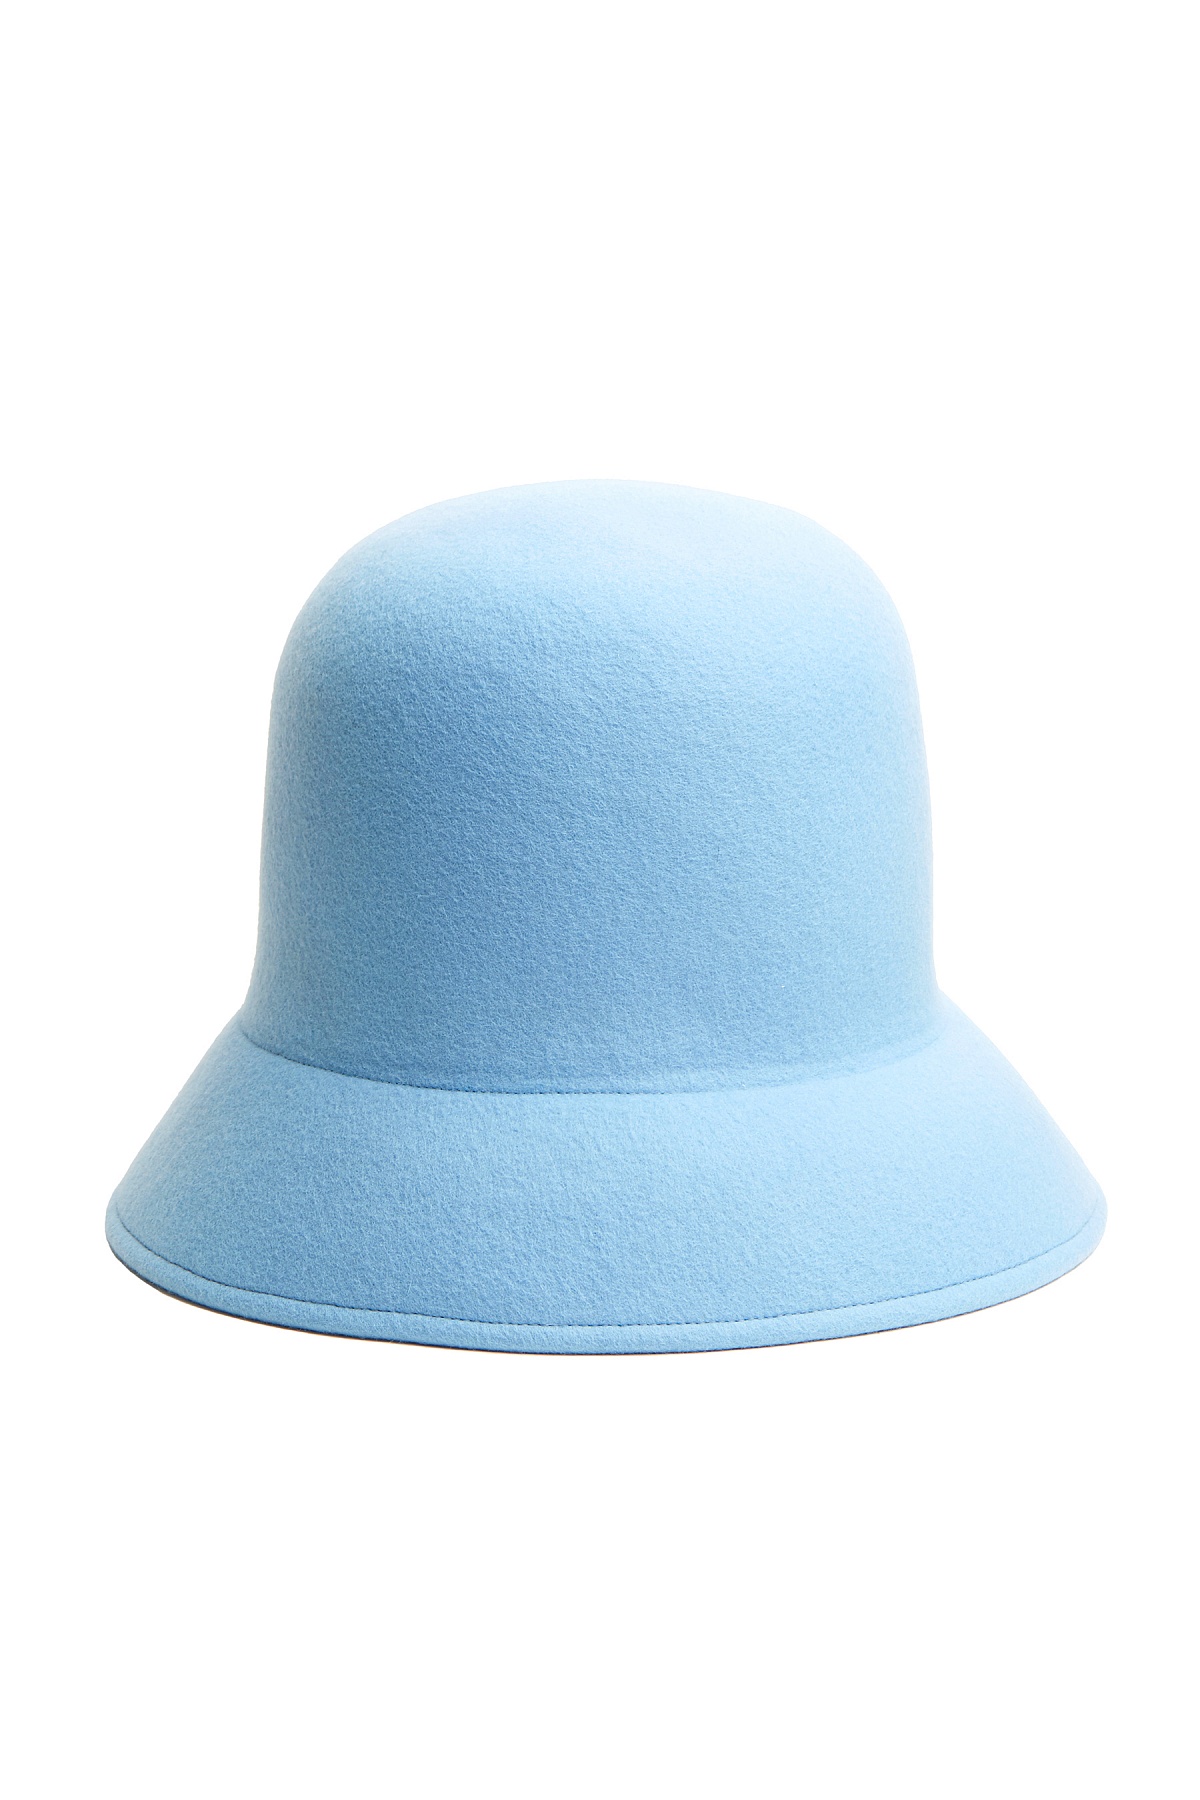 Женская шляпа Nina Ricci, 72 800 руб. (КМ20)